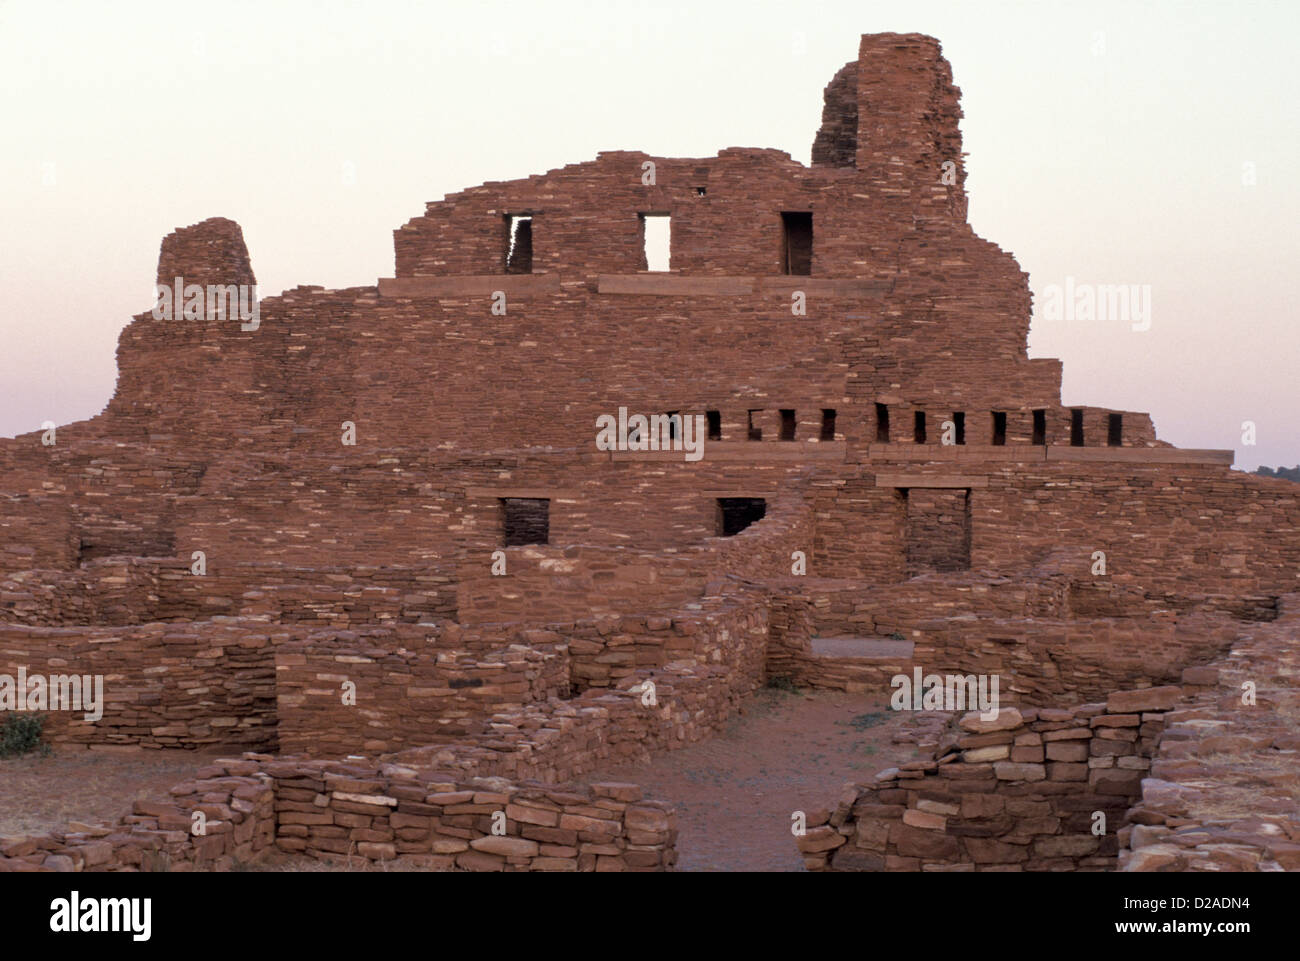 Nuevo México, Salinas, Pueblo de misiones. Abo ruinas. Coloniales españolas y los indios, a mediados del 1600 Foto de stock